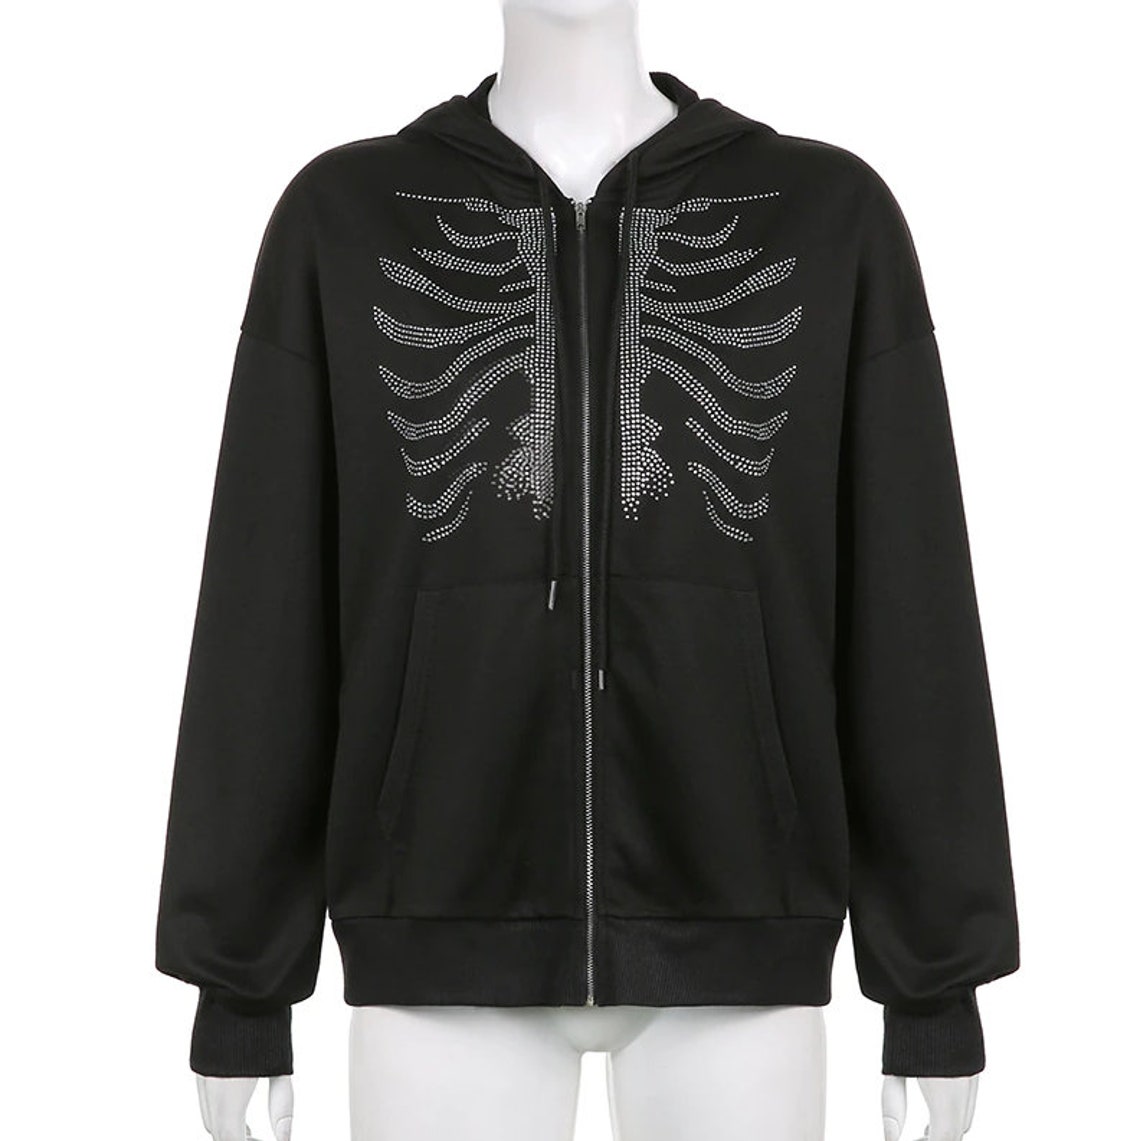 Skeleton Jacket Zip Up Rhinestone - jacketl